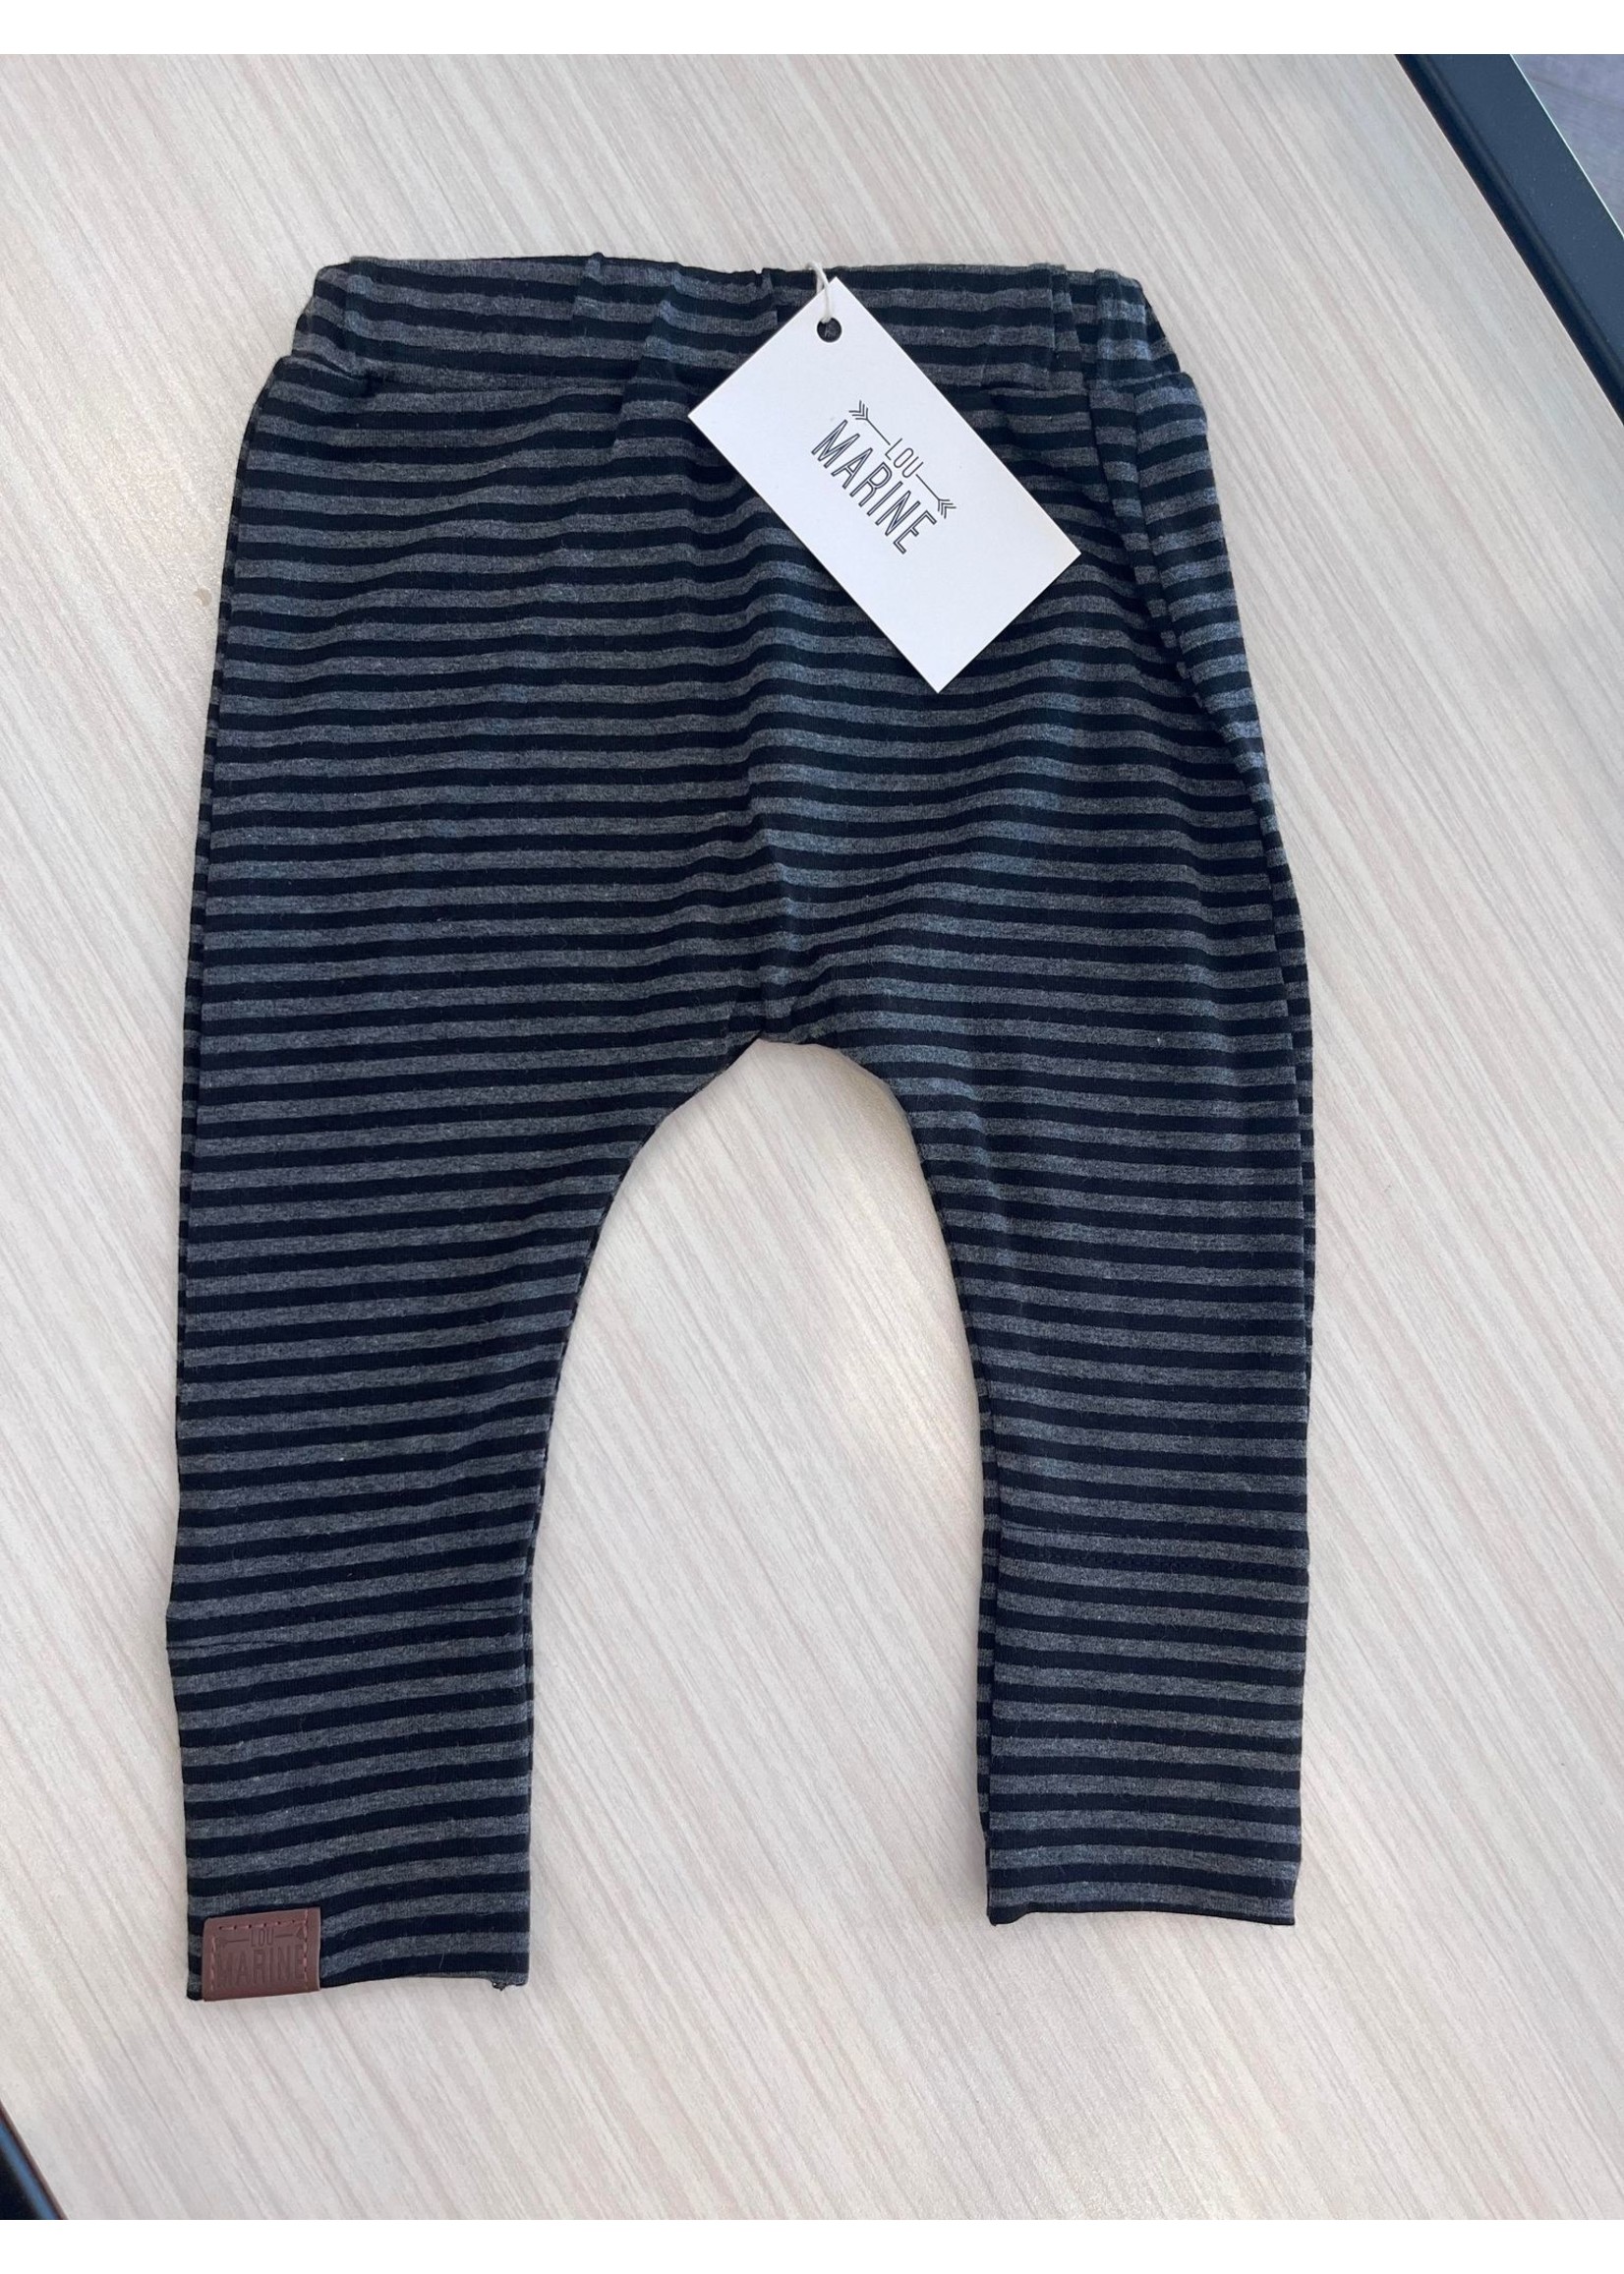 Lou Marine || Pantalon Évolutif Noir rayé  1-2 ans